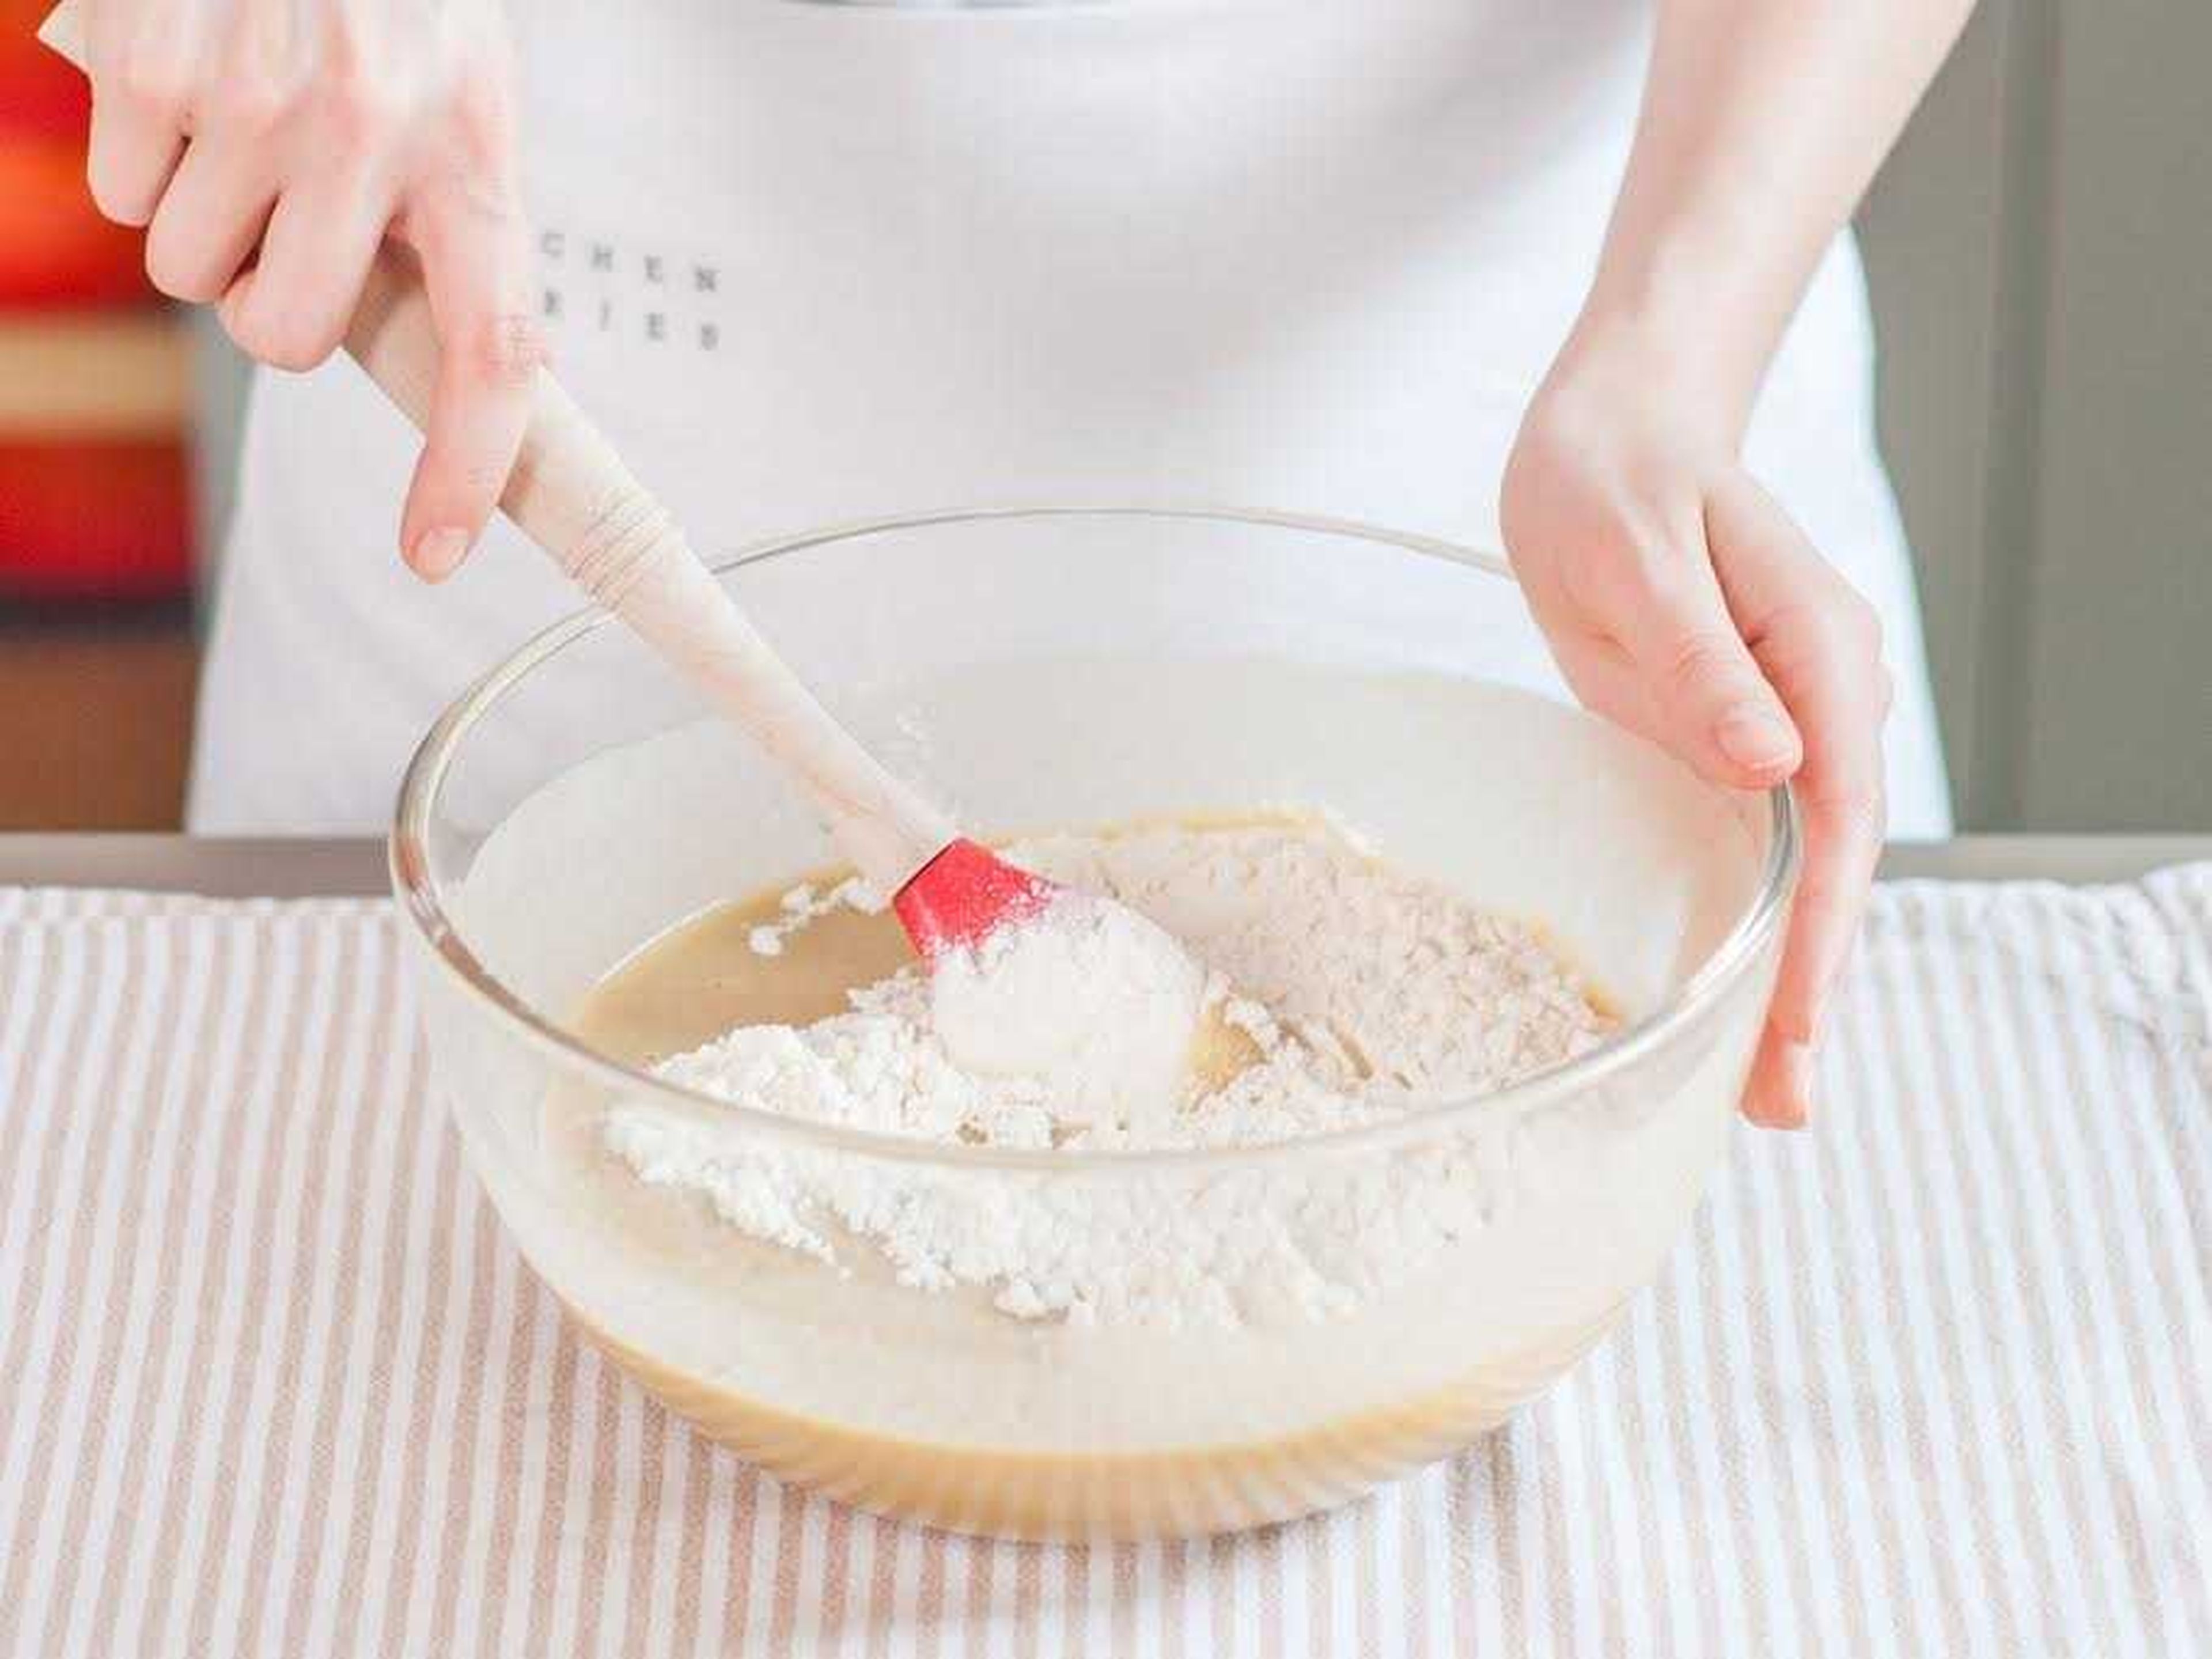 In einer separaten Schüssel Mehl, Backpulver und das restliche Salz miteinander vermengen. Eine Hälfte der Mehlmischung zur Ei-Zucker-Mischung geben. Joghurt unterrühren und anschließend die restliche Mehlmischung hinzugeben und vermengen.